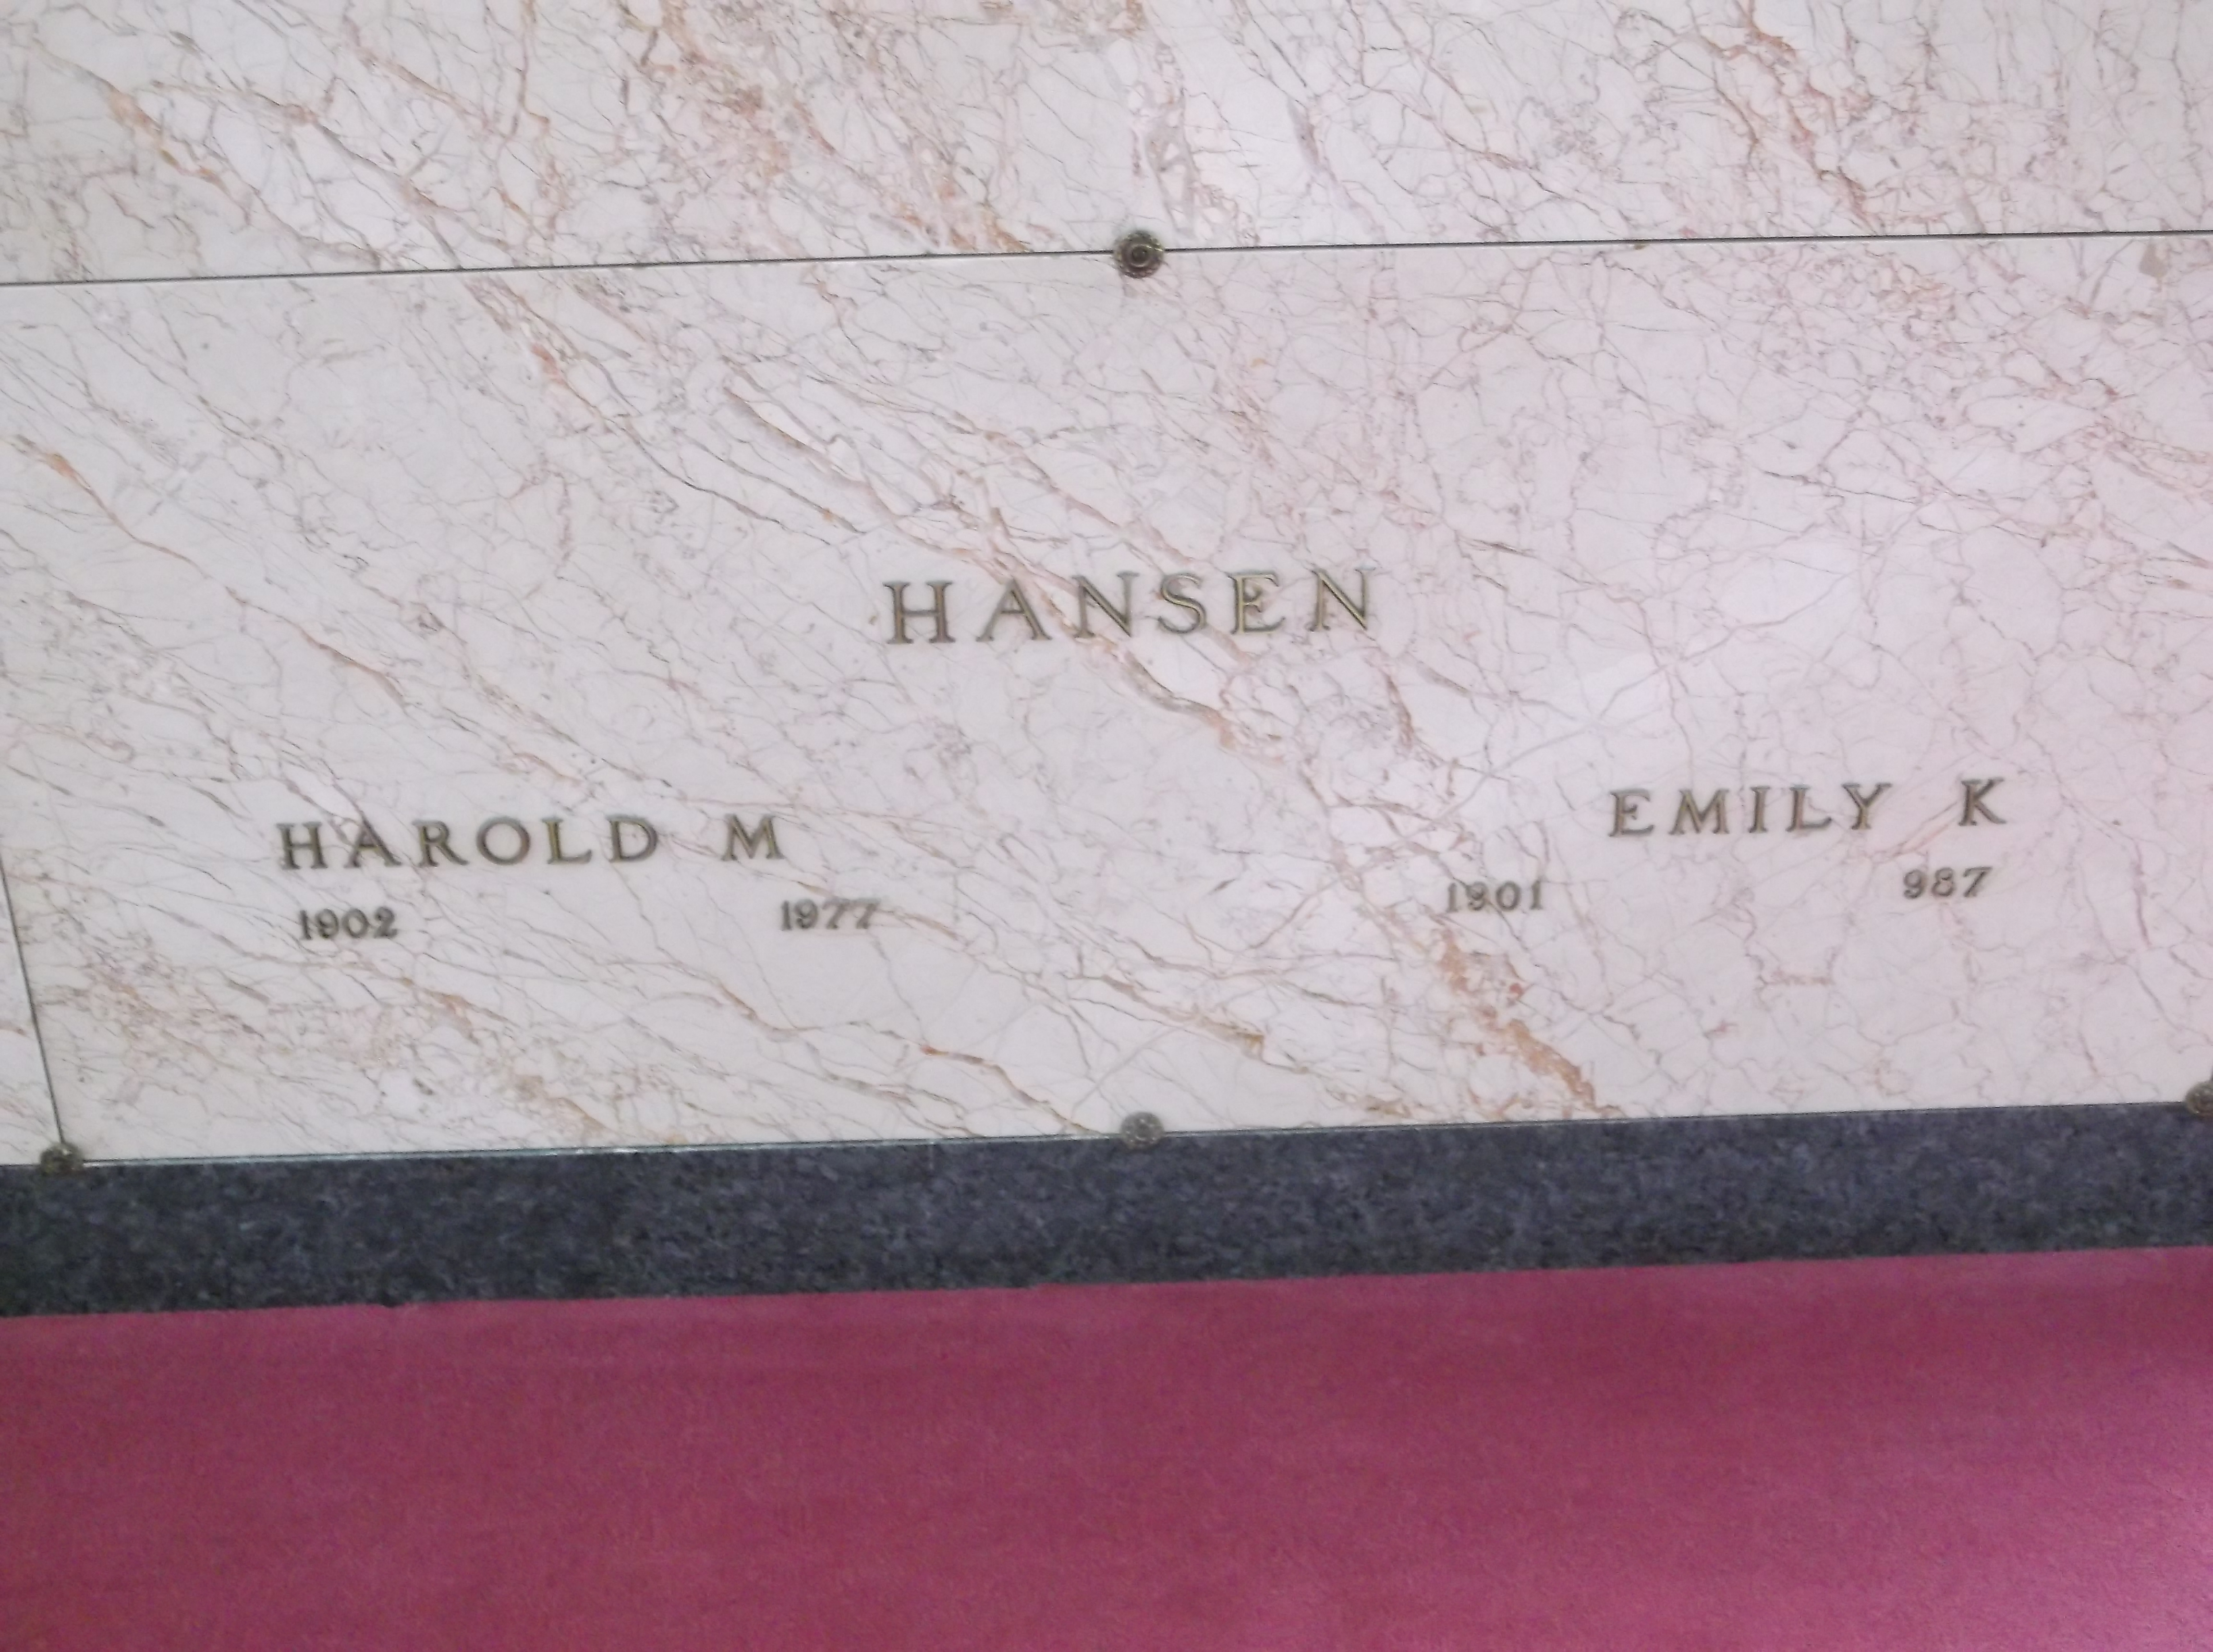 Harold M Hansen